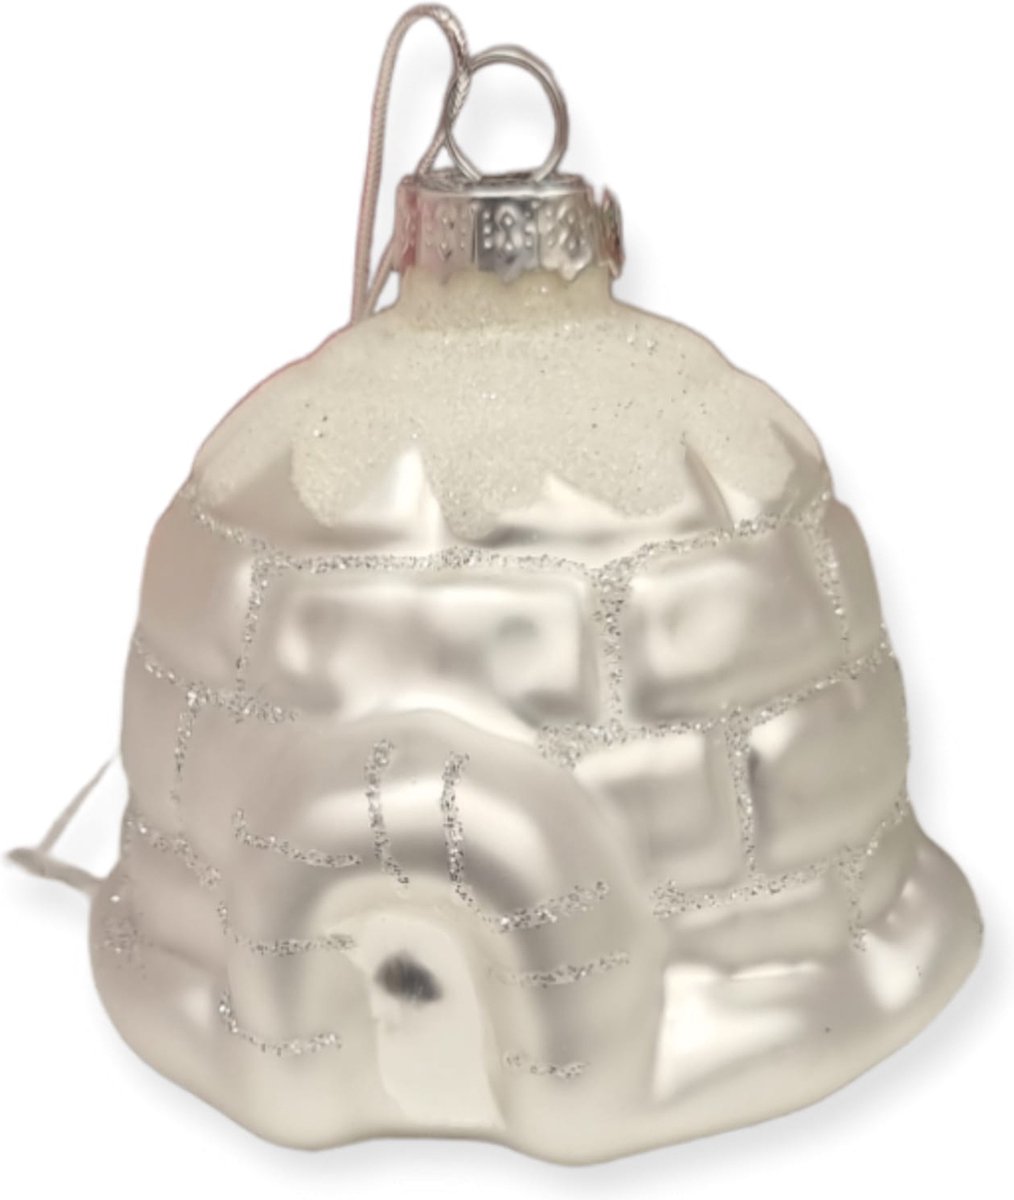 Cactula glazen kerstbal kersthanger Iglo wit met zilver 7 cm